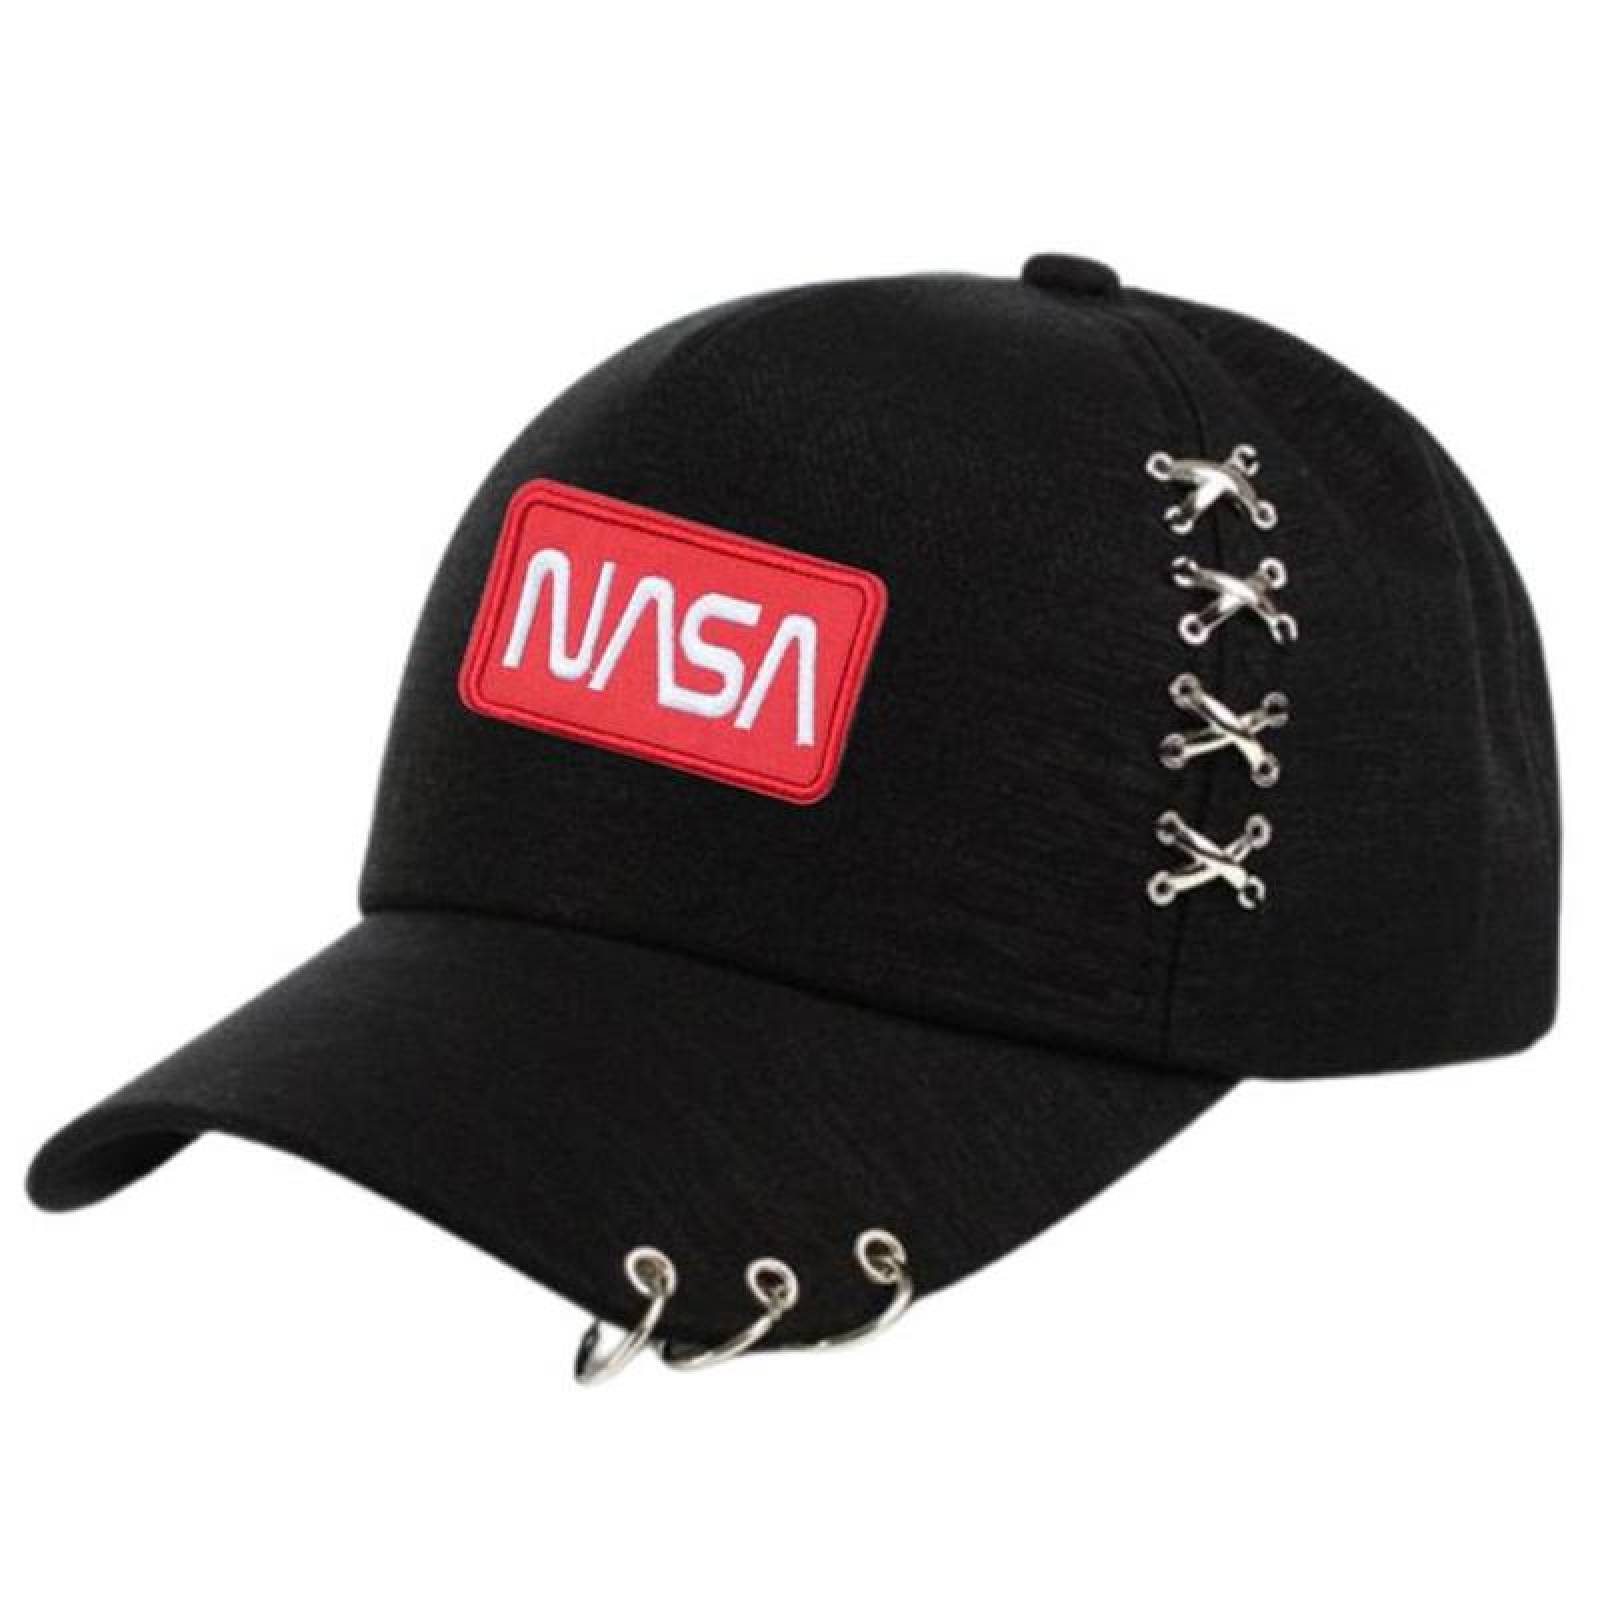 NASA Parches Fáciles de Cocer MXNAA-003-2 3 Parches Nasa 9,1x4,1cm Rojo  Blanco